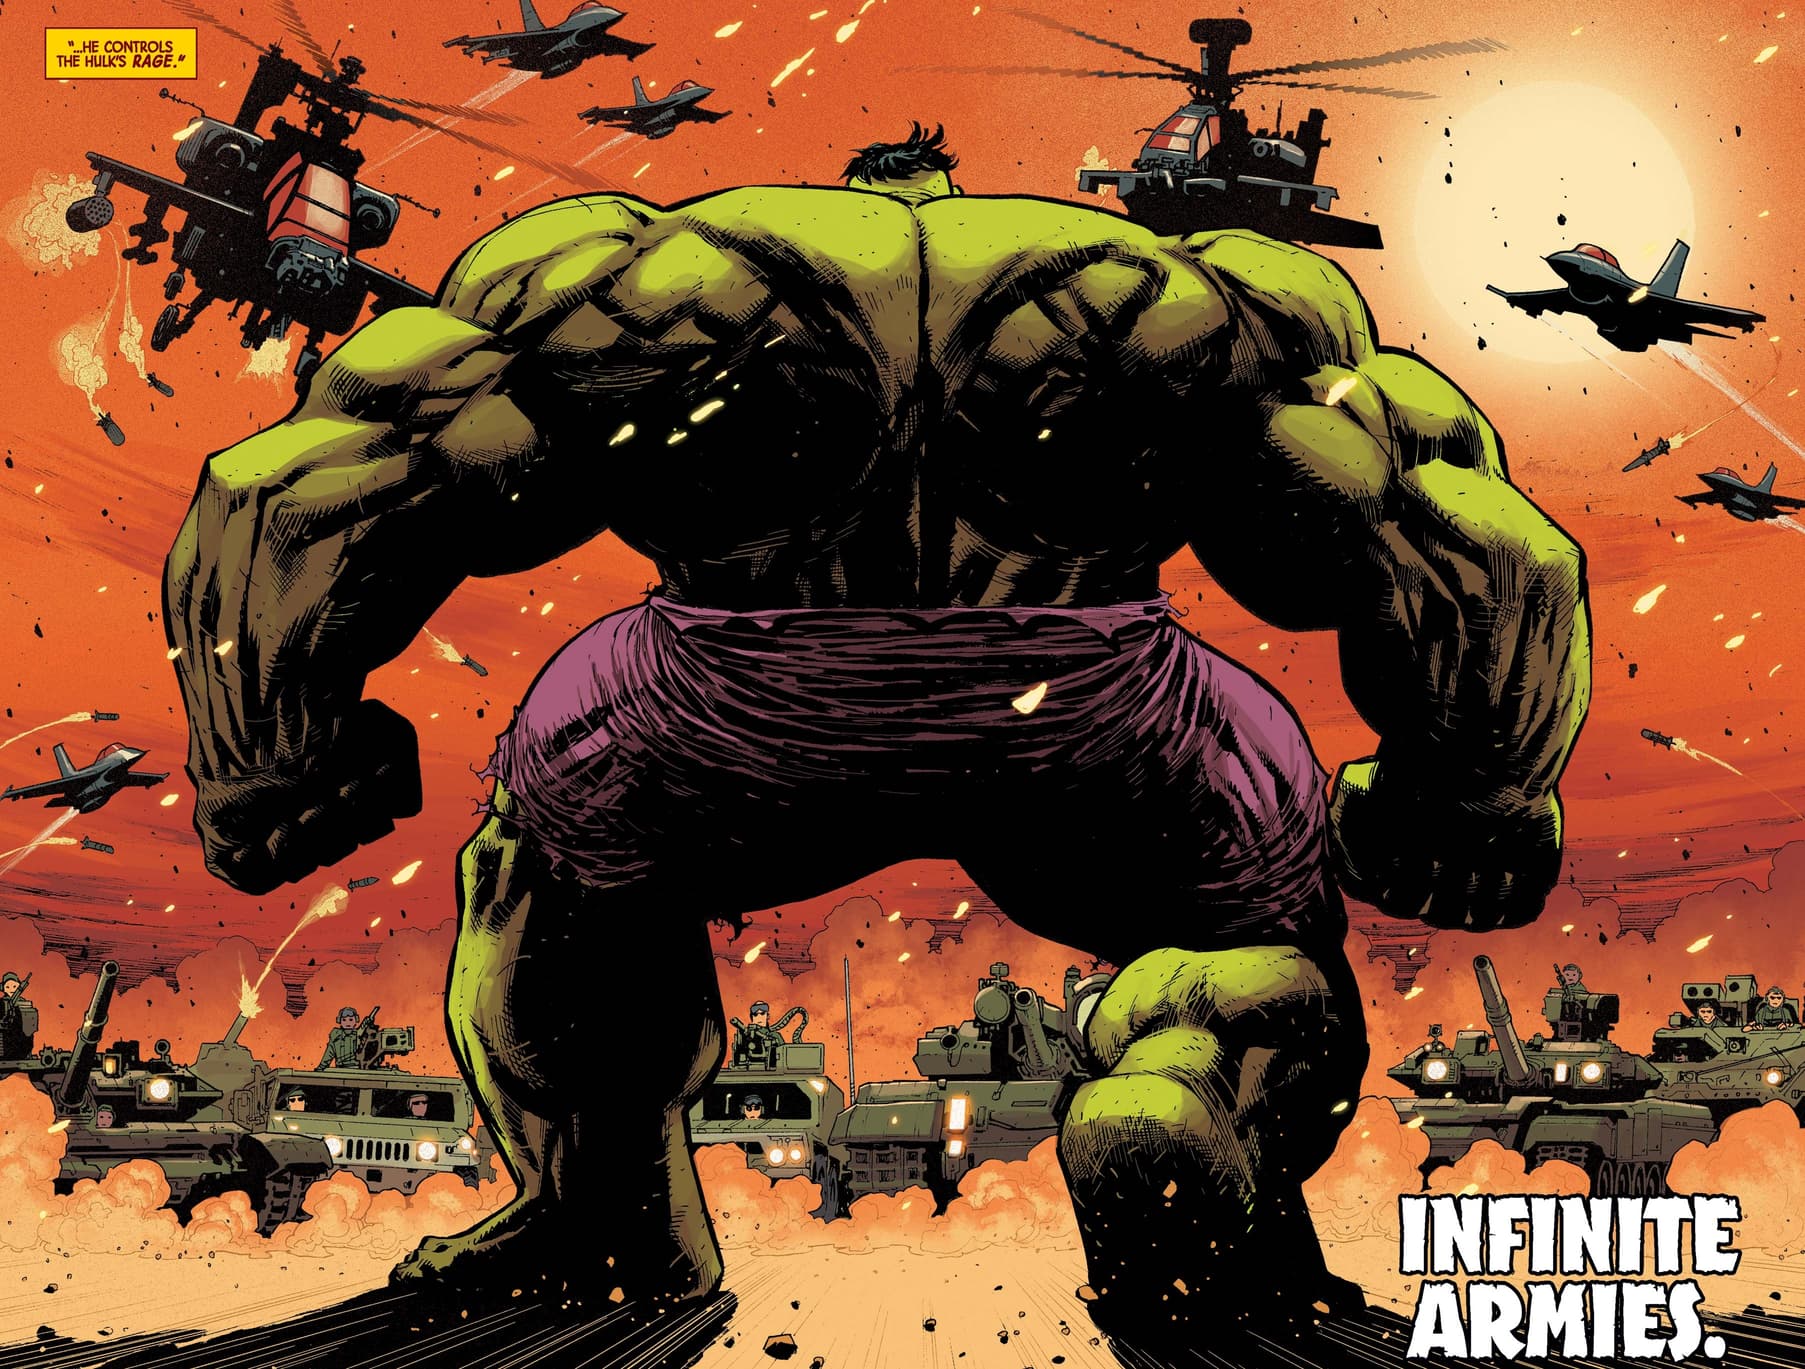 Hulk faces down an army.